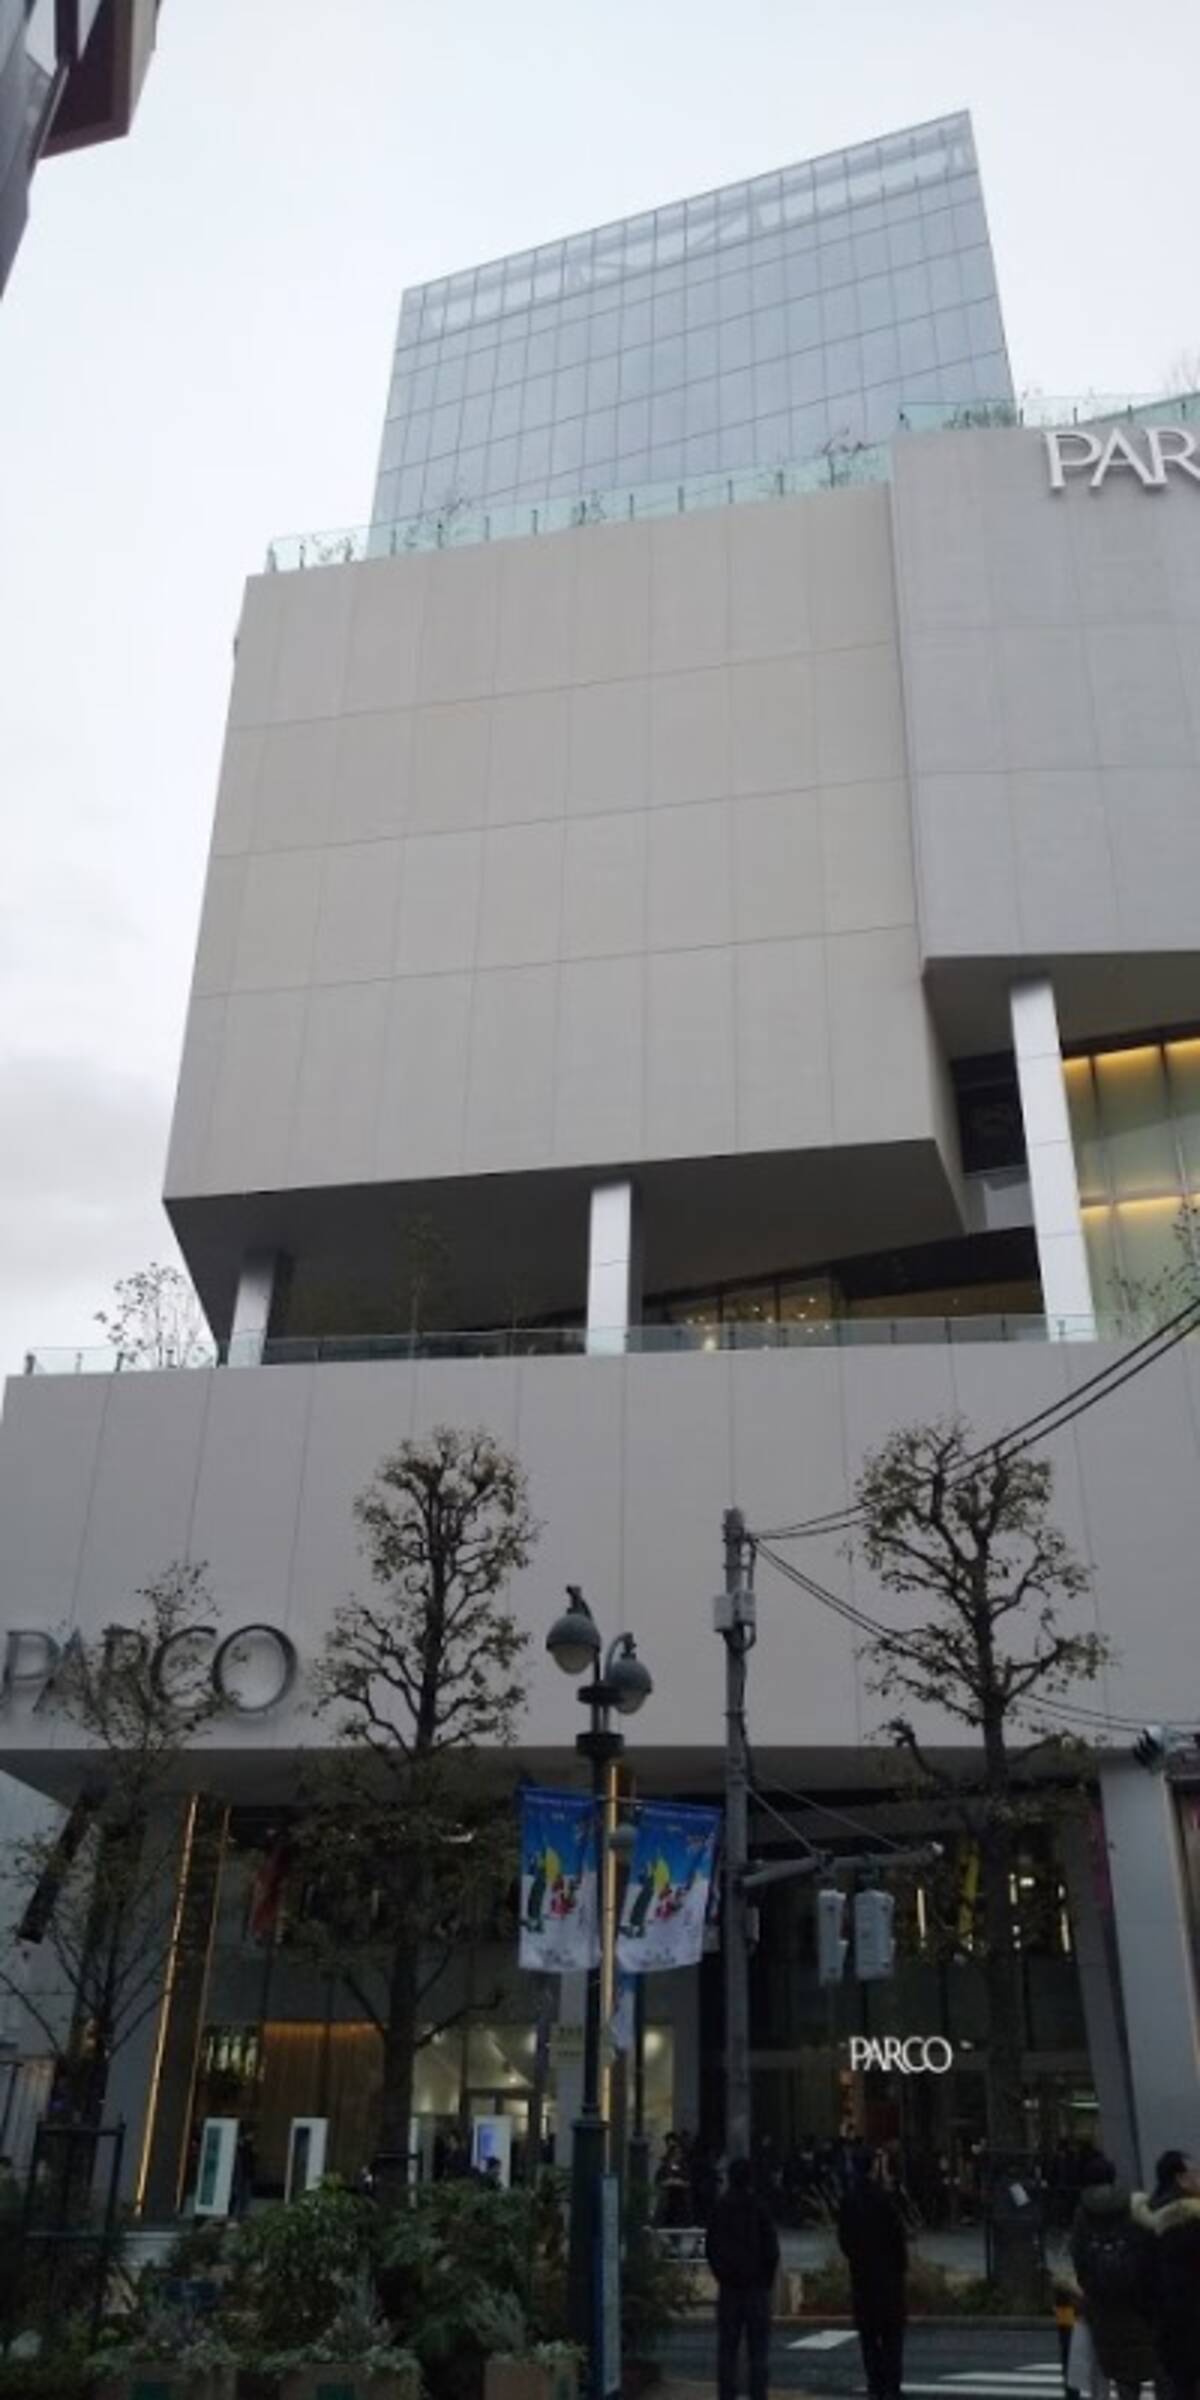 渋谷パルコリニューアルオープンで見えたパルコの変わったところ 変わらないところ パルコ劇場も復活 エキサイトニュース